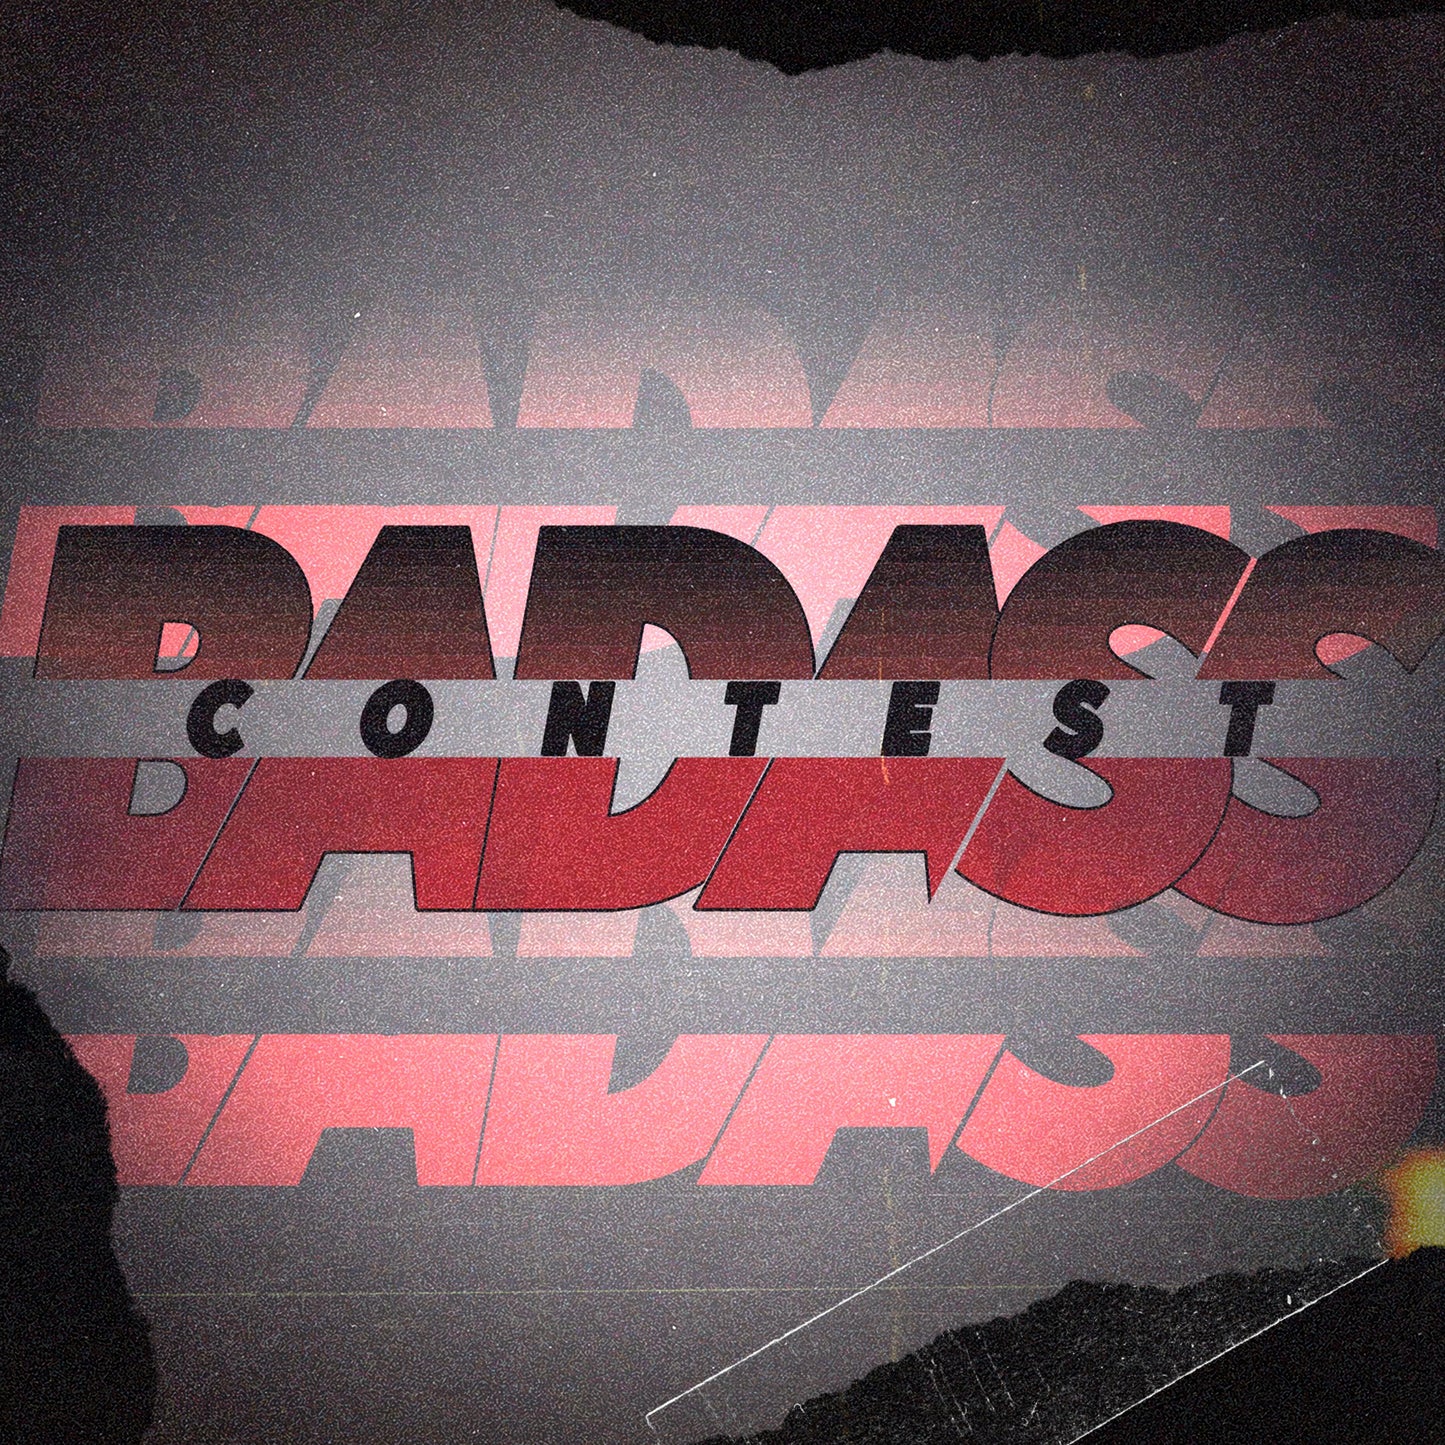 Badass Contest